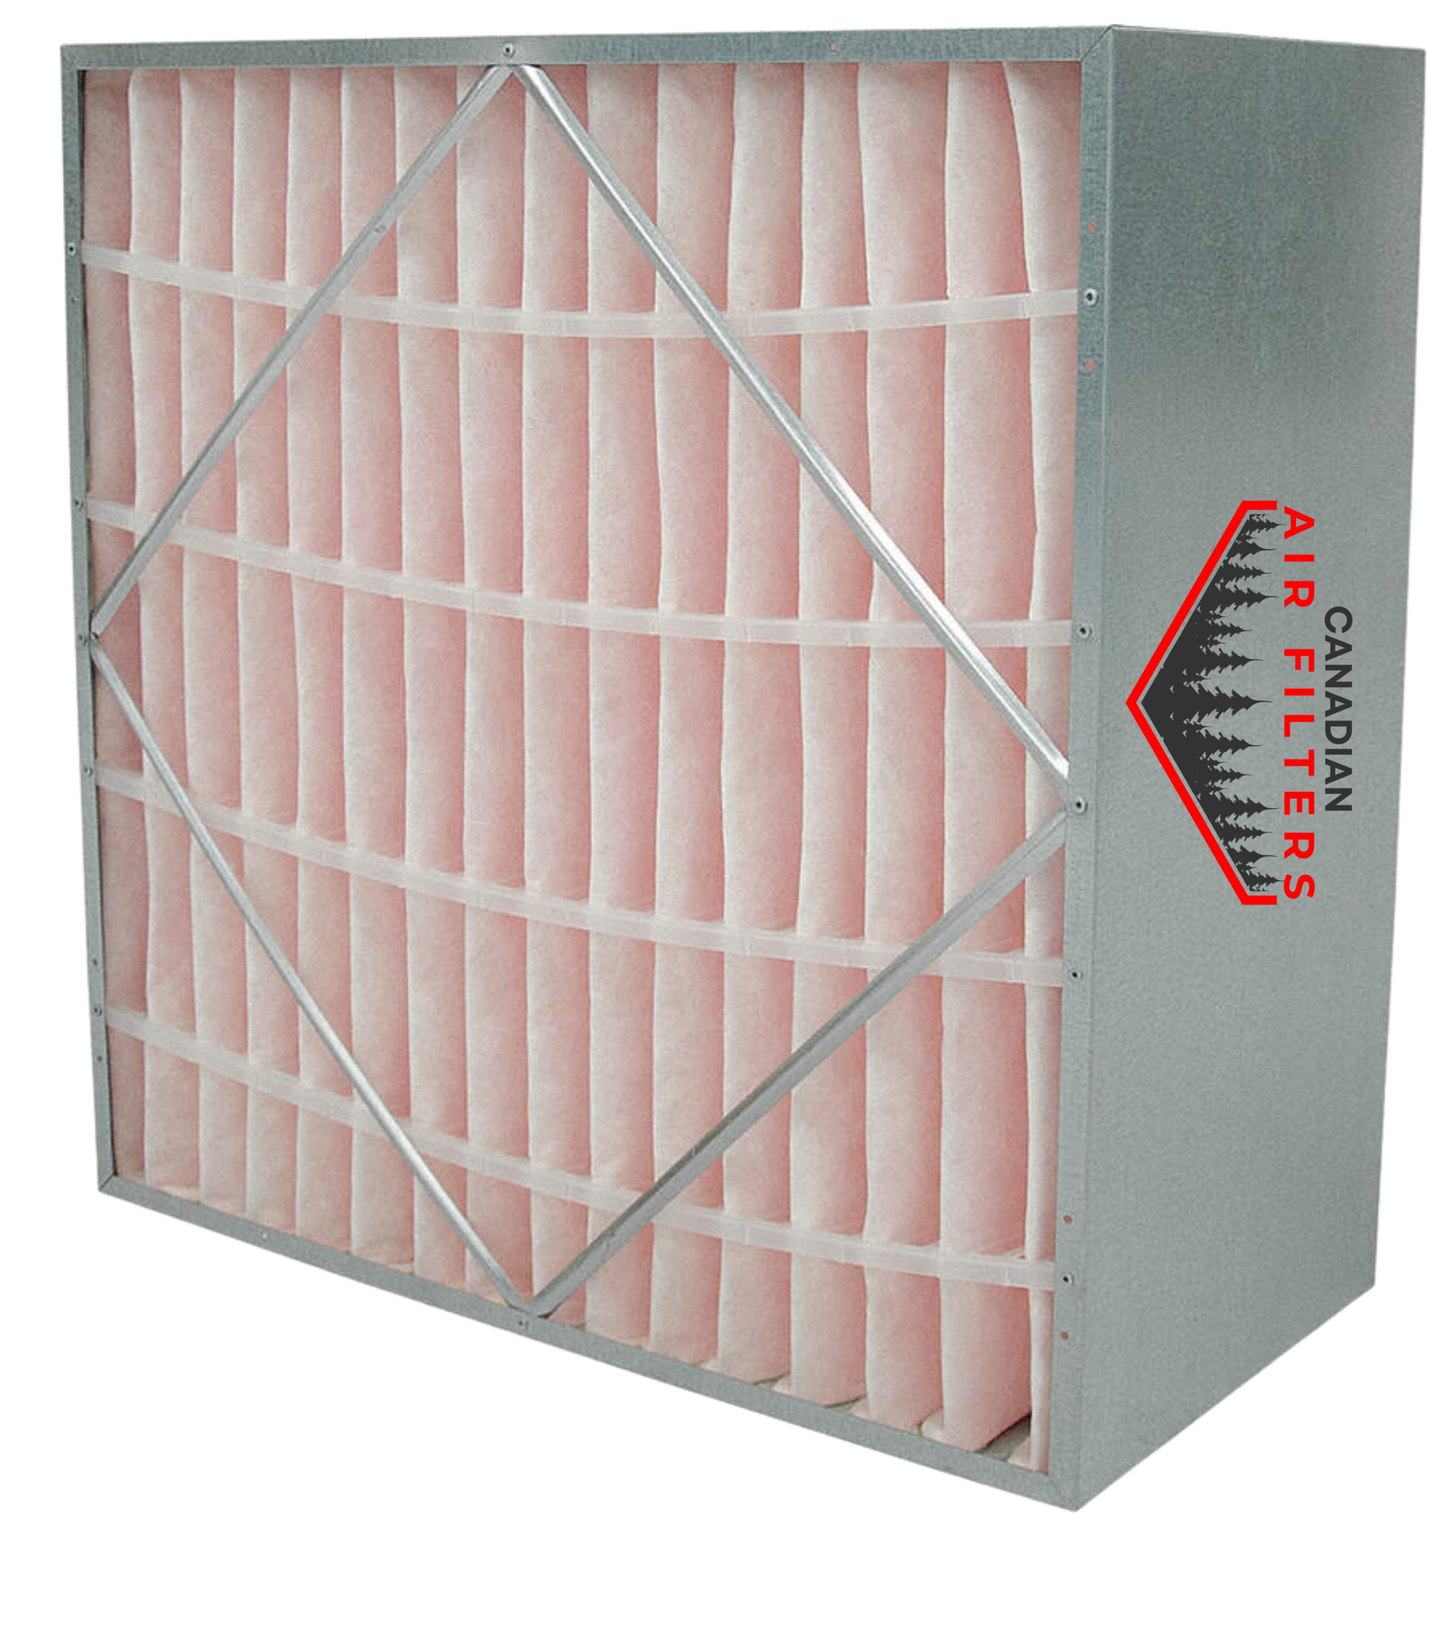 20 x 24 x 12 - Rigid Cell Air Filters Box Style - Merv 11 (Each)